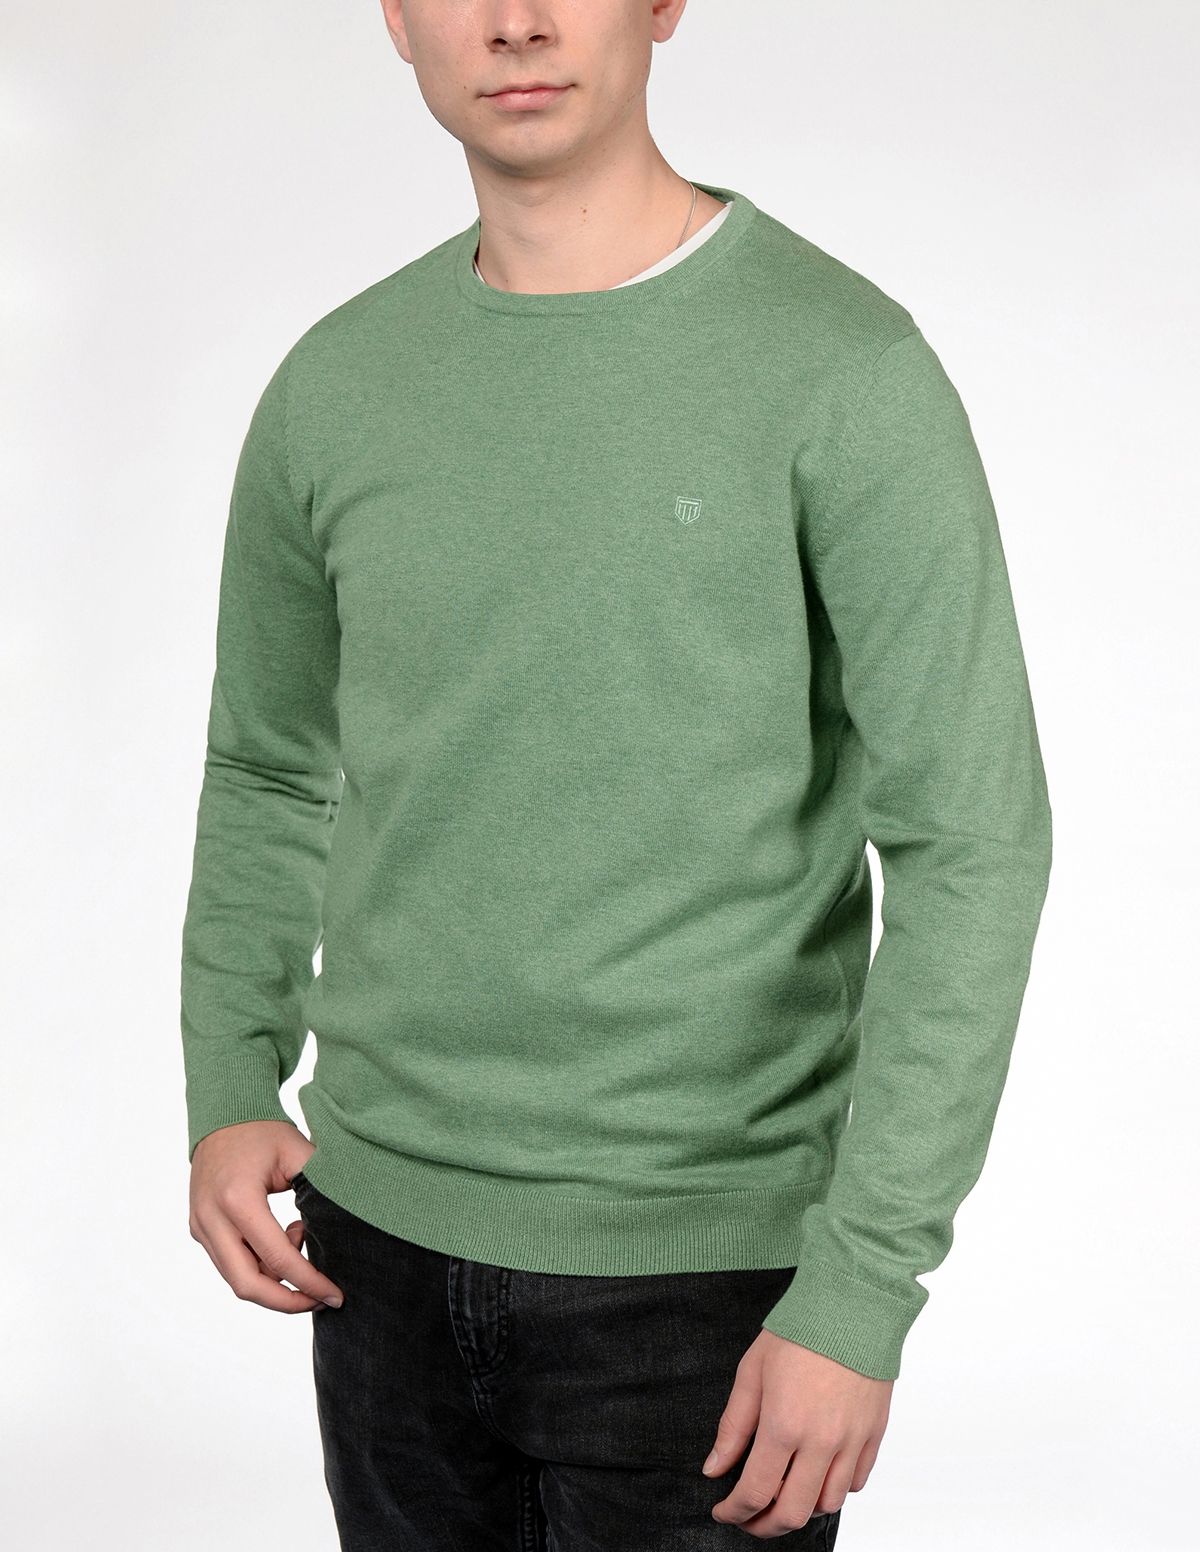 Pullover mit Labelstickerei auf der Brust - Palm green Melange